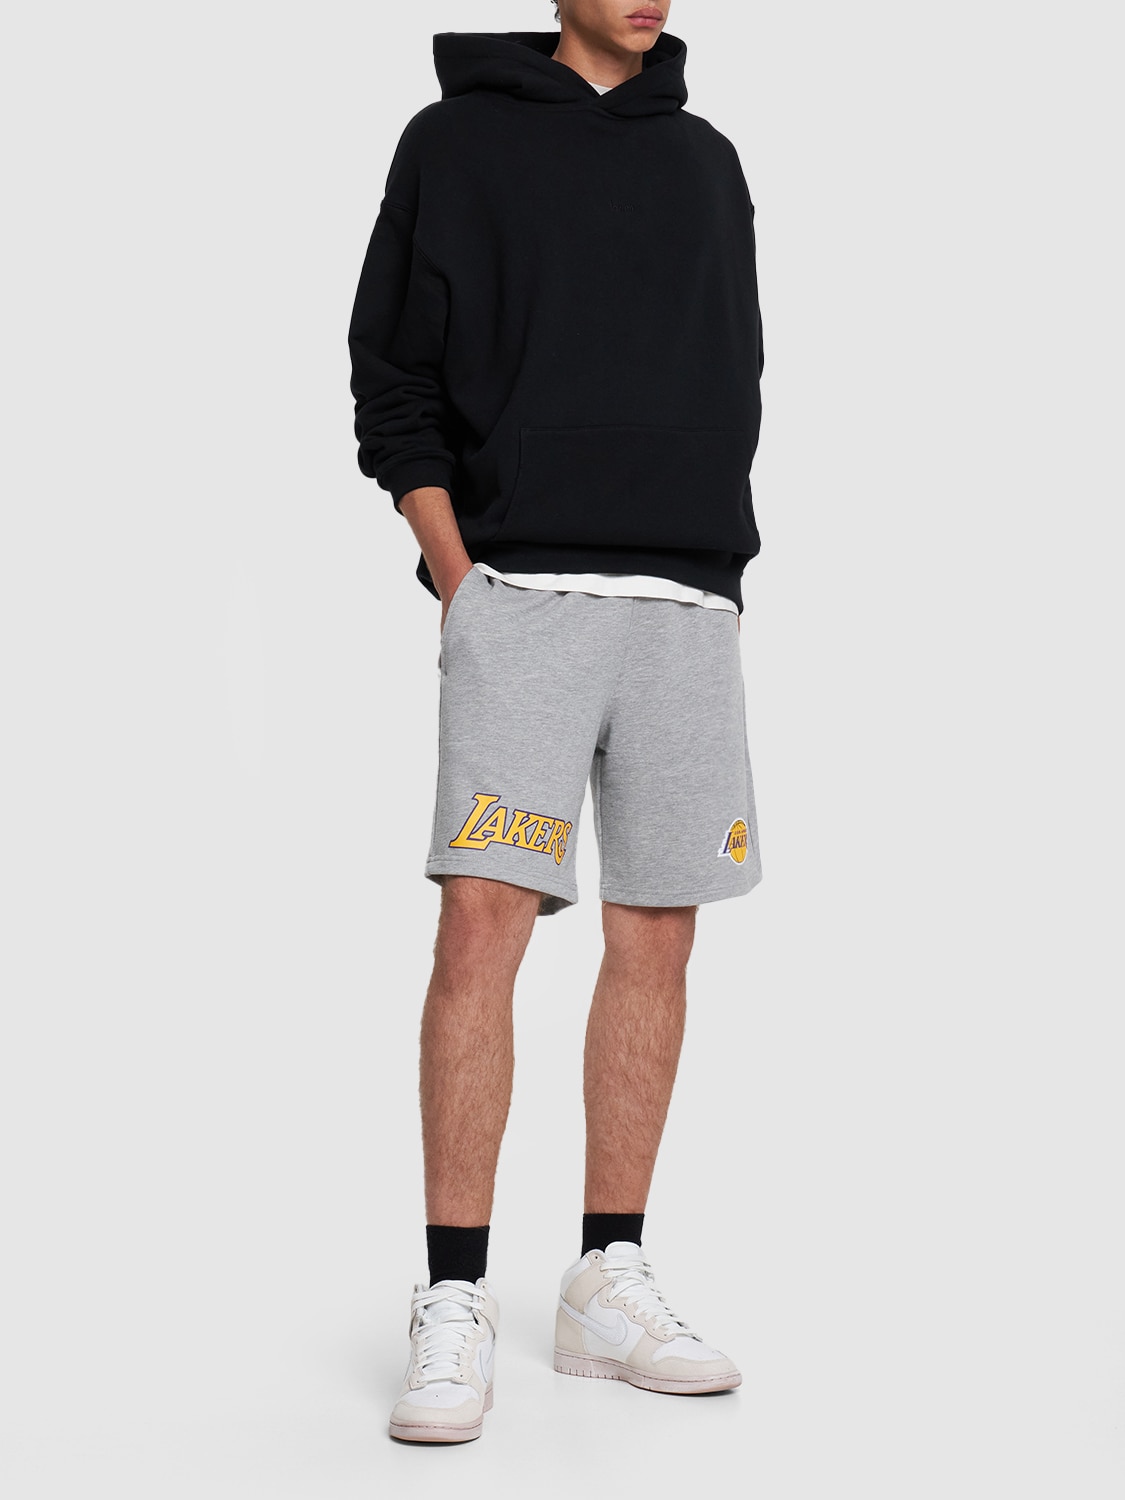 grey lakers shorts